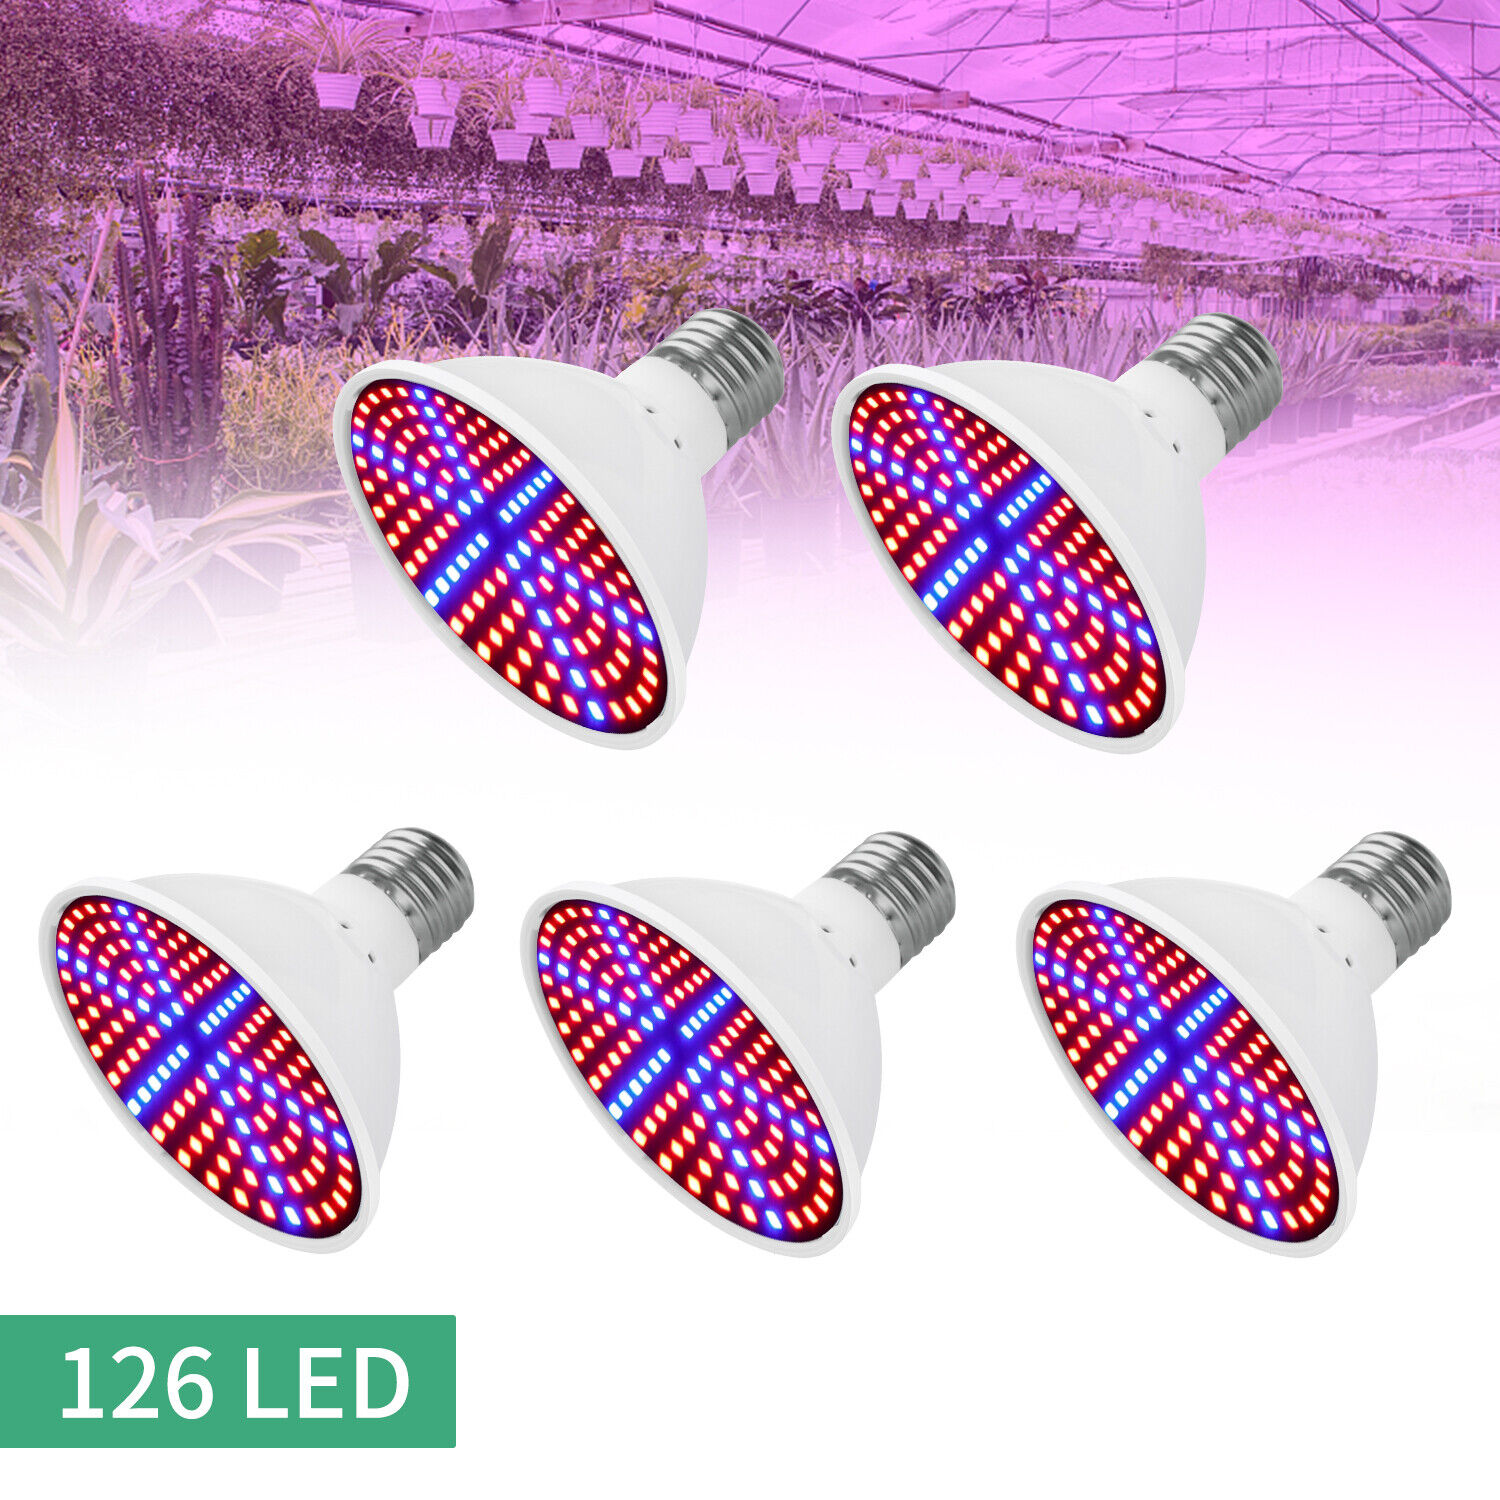 LED Grow Light Bulb Full Spectrum Light for Indoor Plants Flowers Veg Growing